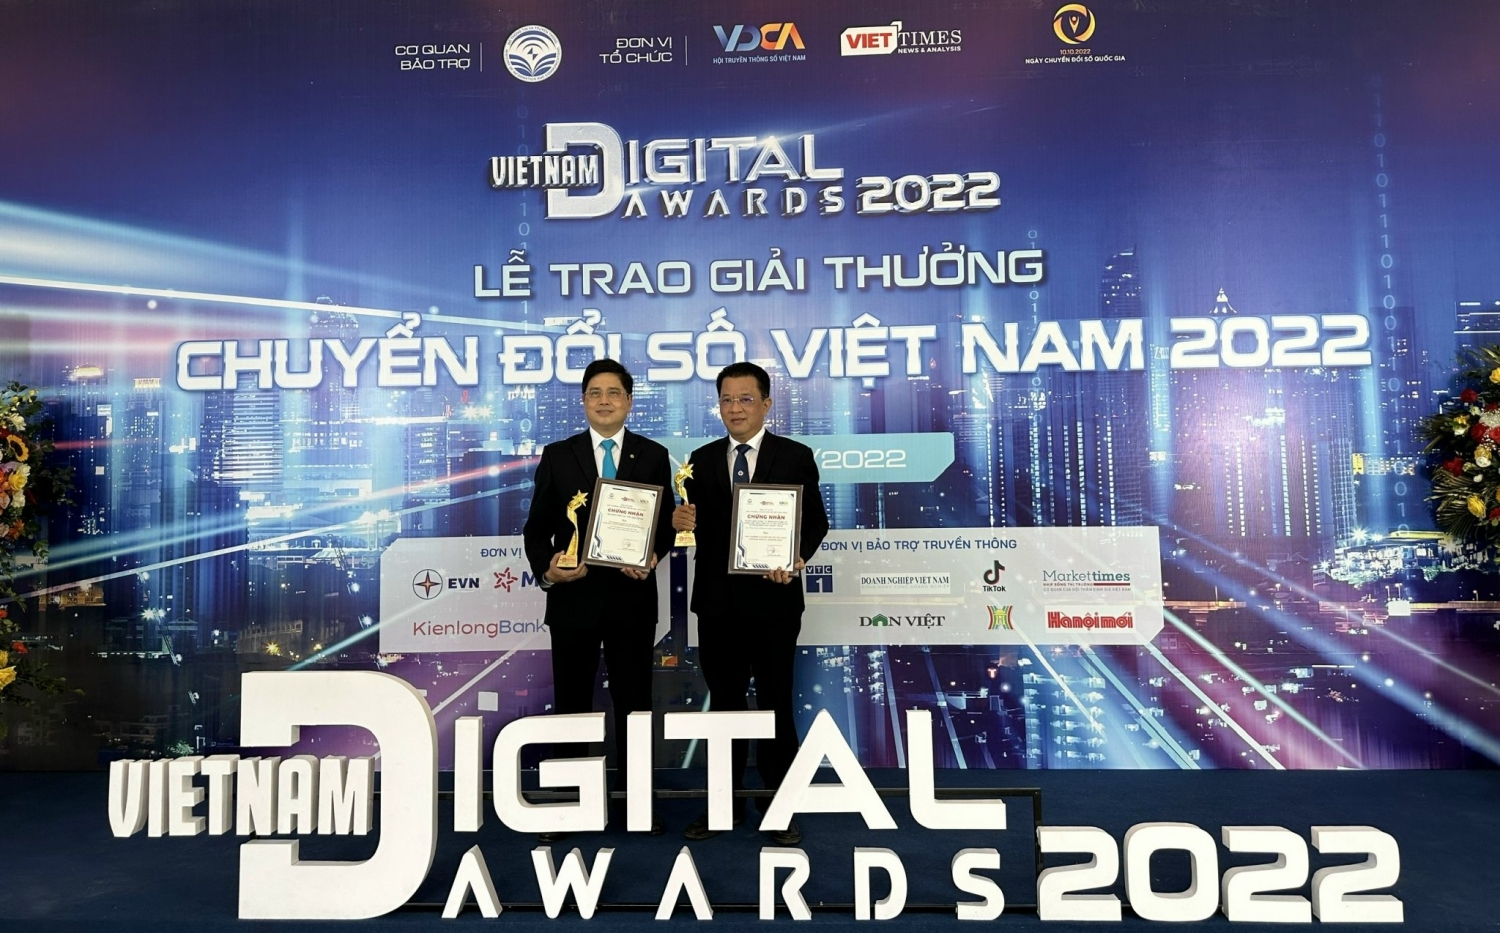 EVNCPC được vinh danh tại “Giải thưởng Chuyển đổi số Việt Nam - 2022”